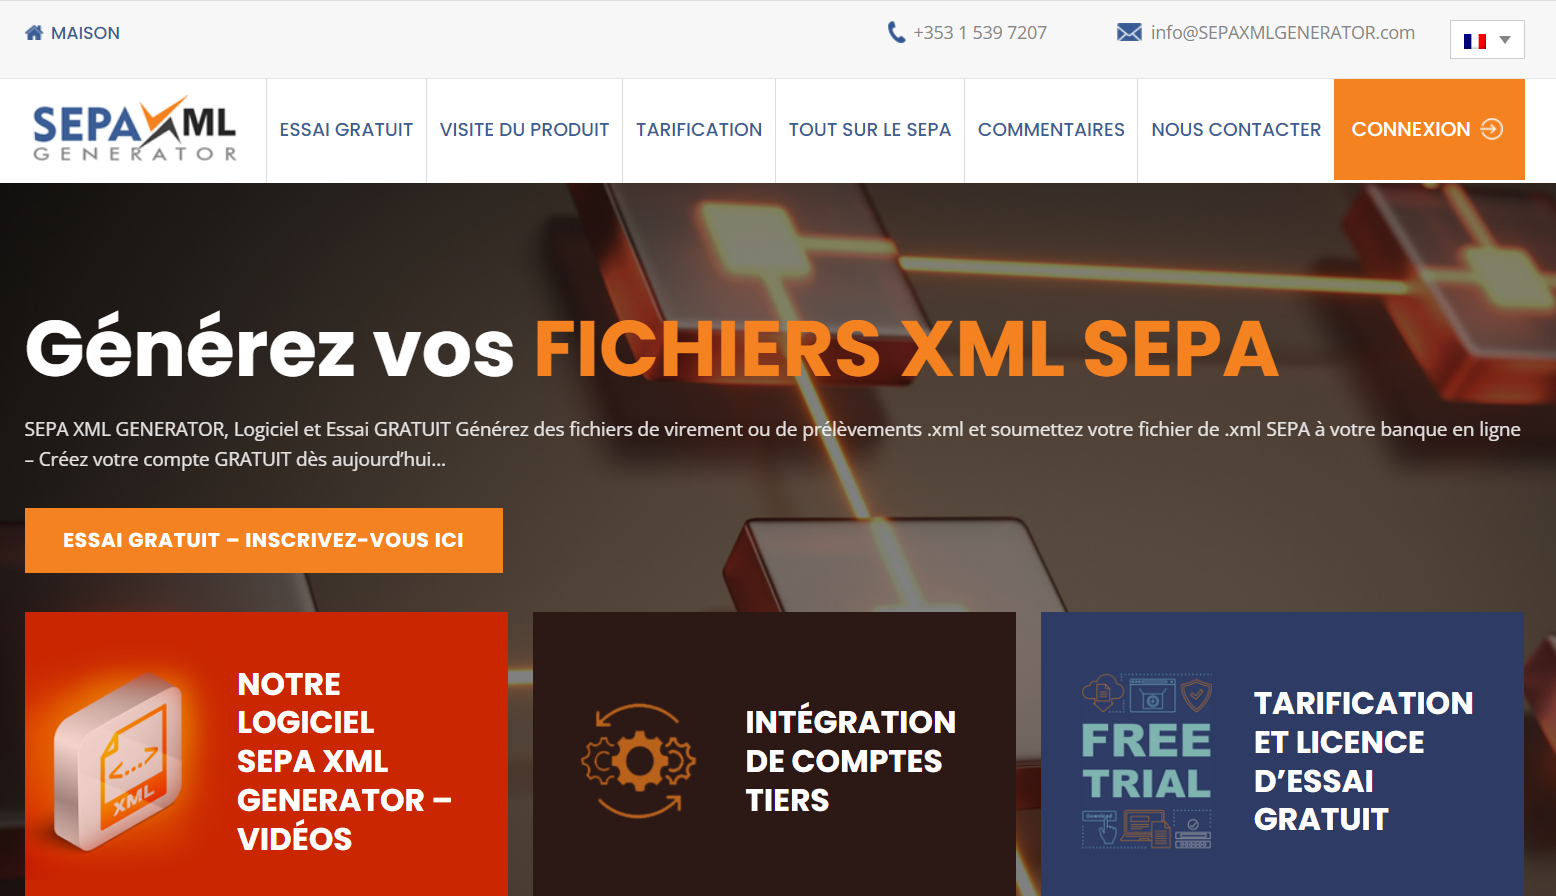 Il sito web di SEPA XML GENERATOR è ora in francese